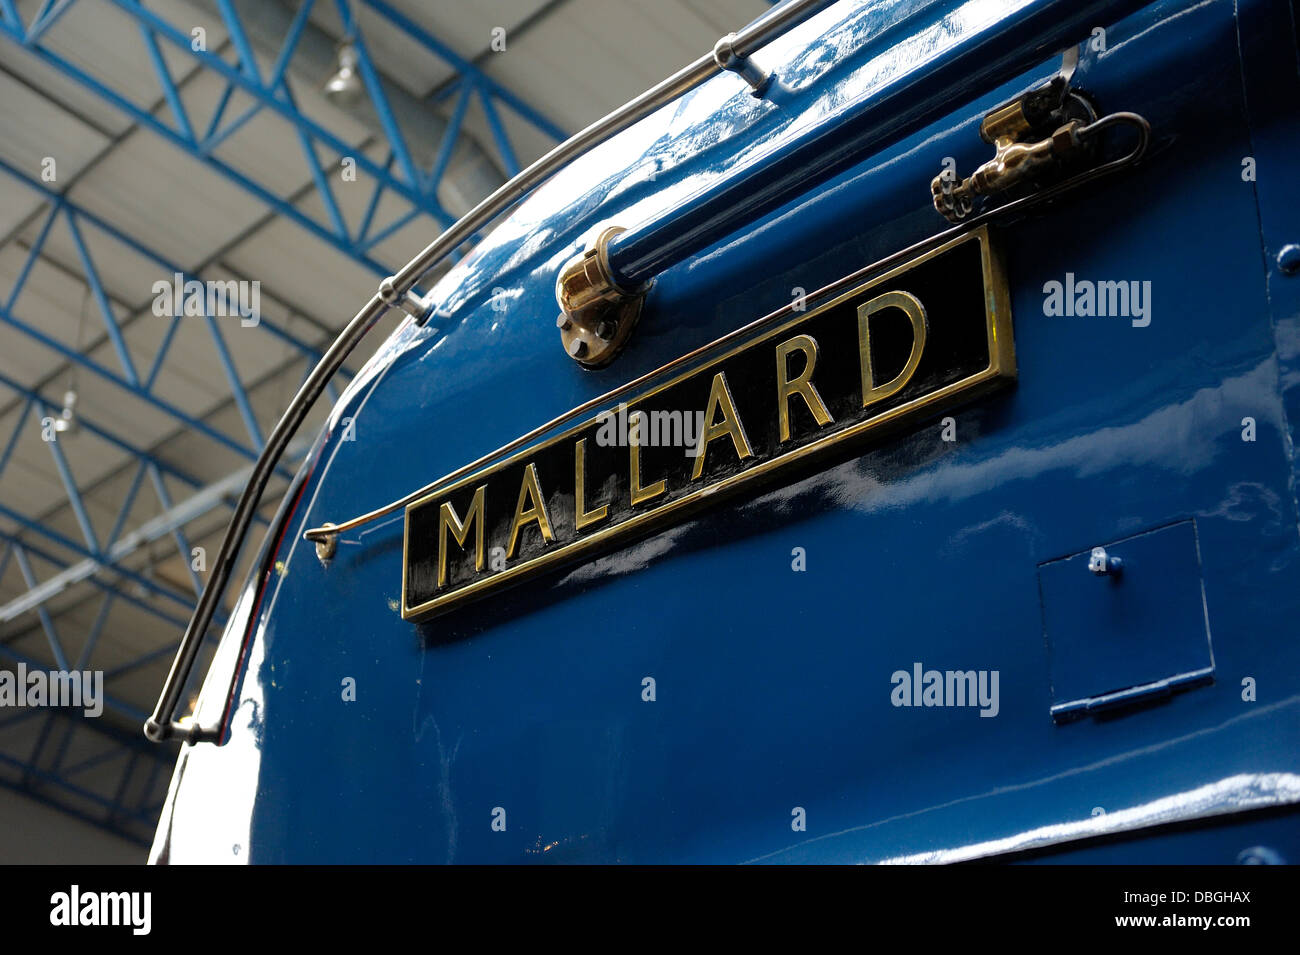 La locomotive mallard dans le National Rail Museum de New York en Angleterre Banque D'Images